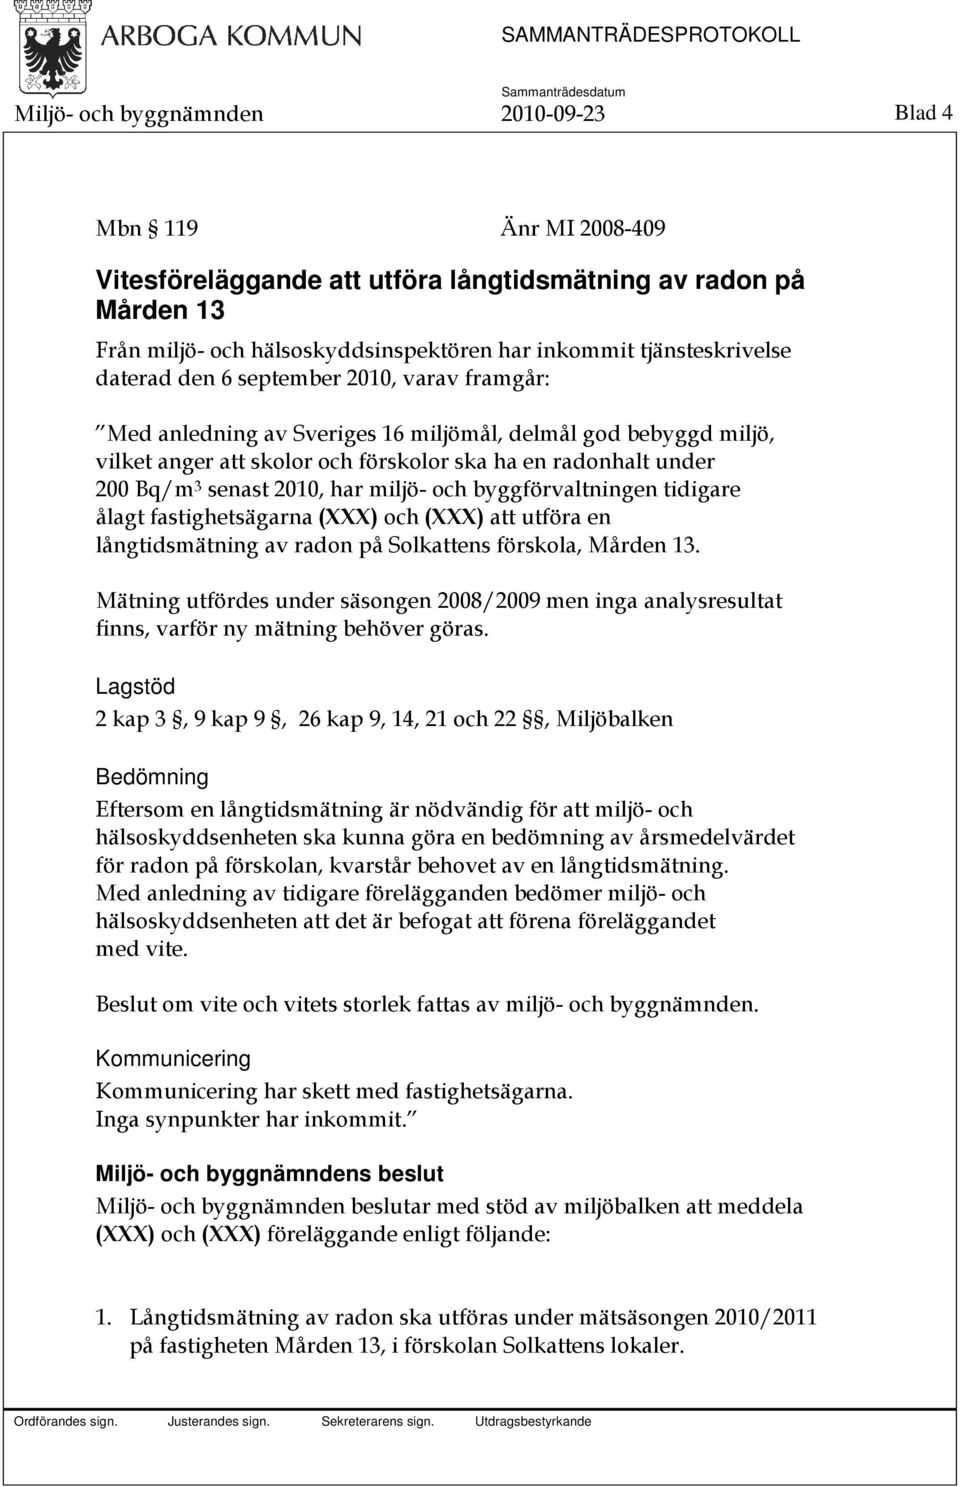 3 senast 2010, har miljö- och byggförvaltningen tidigare ålagt fastighetsägarna (XXX) och (XXX) att utföra en långtidsmätning av radon på Solkattens förskola, Mården 13.